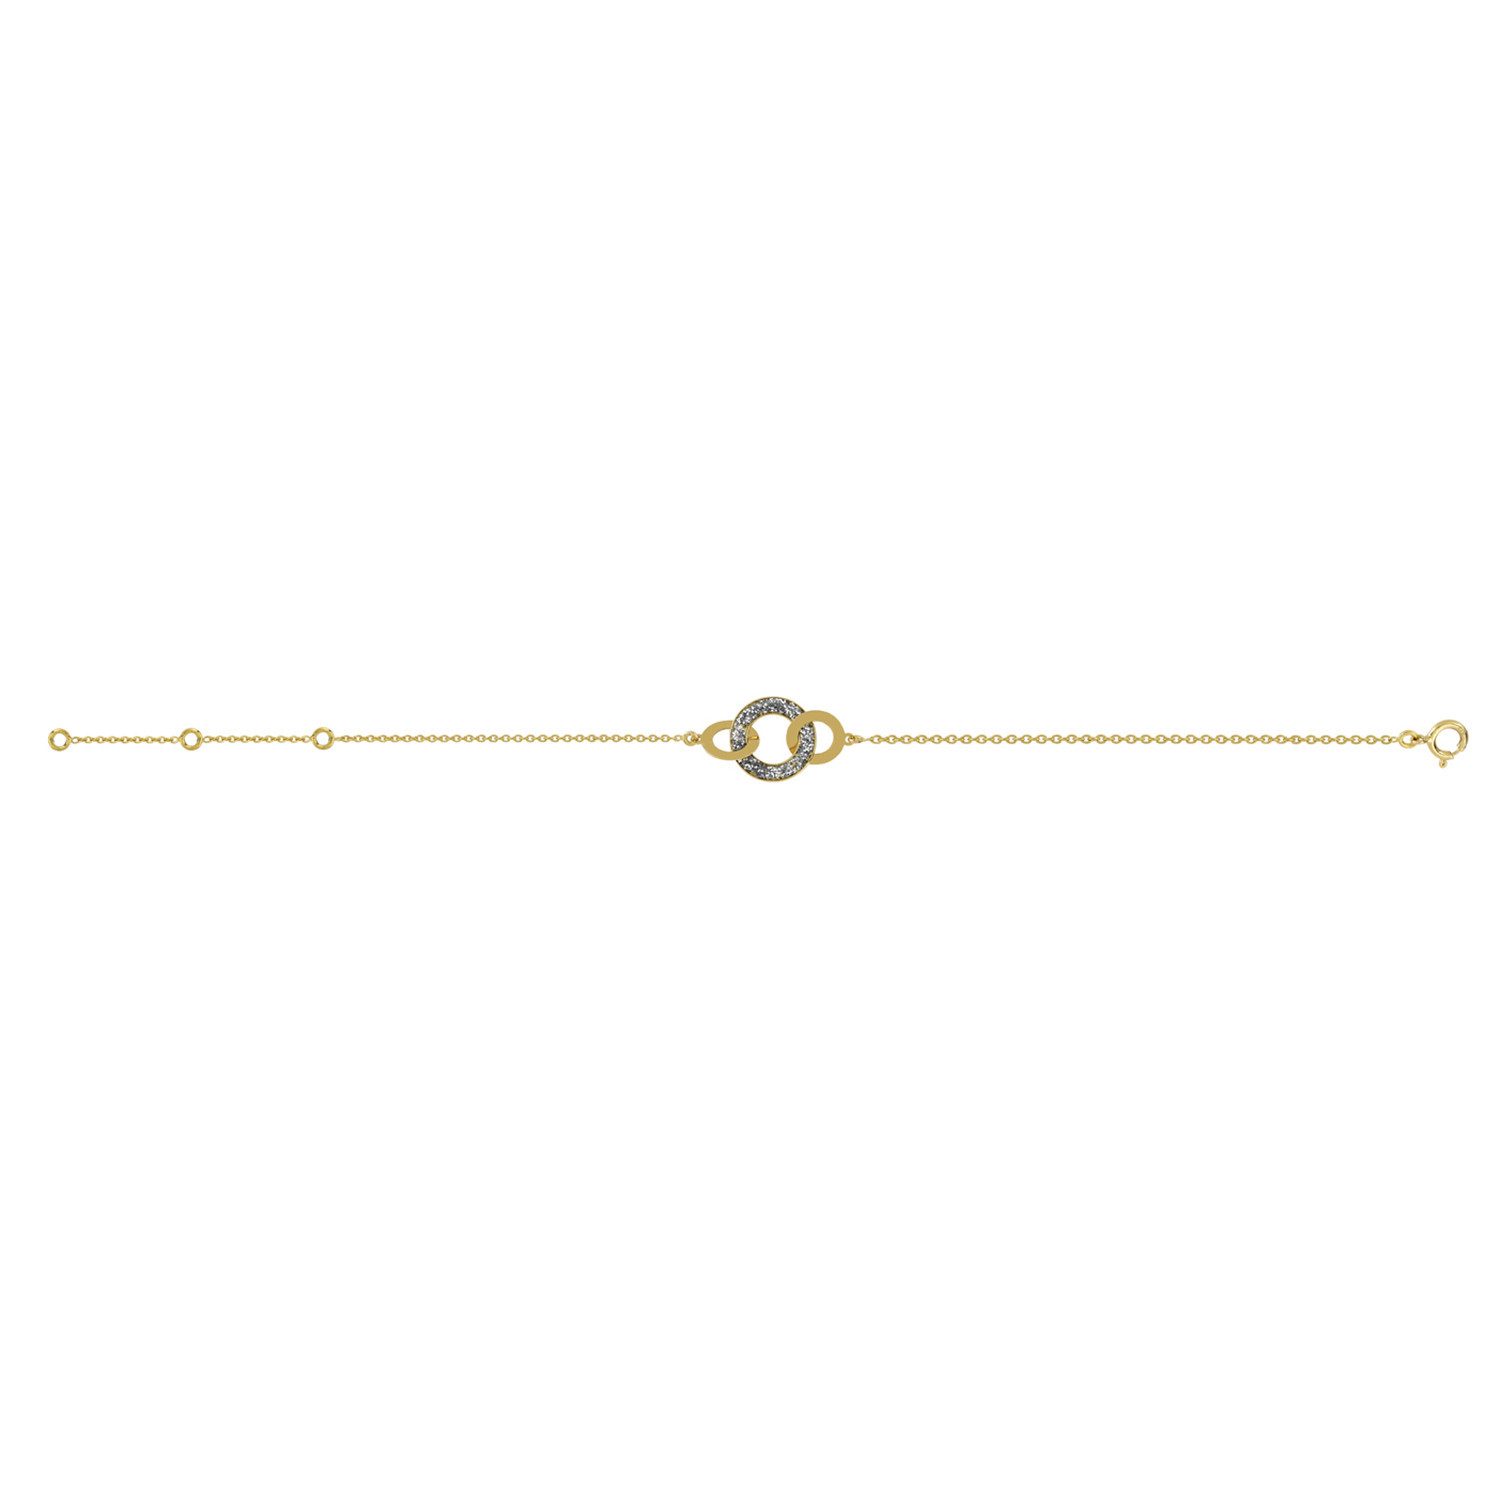 Bracelet motifs anneaux laque paillettée or jaune